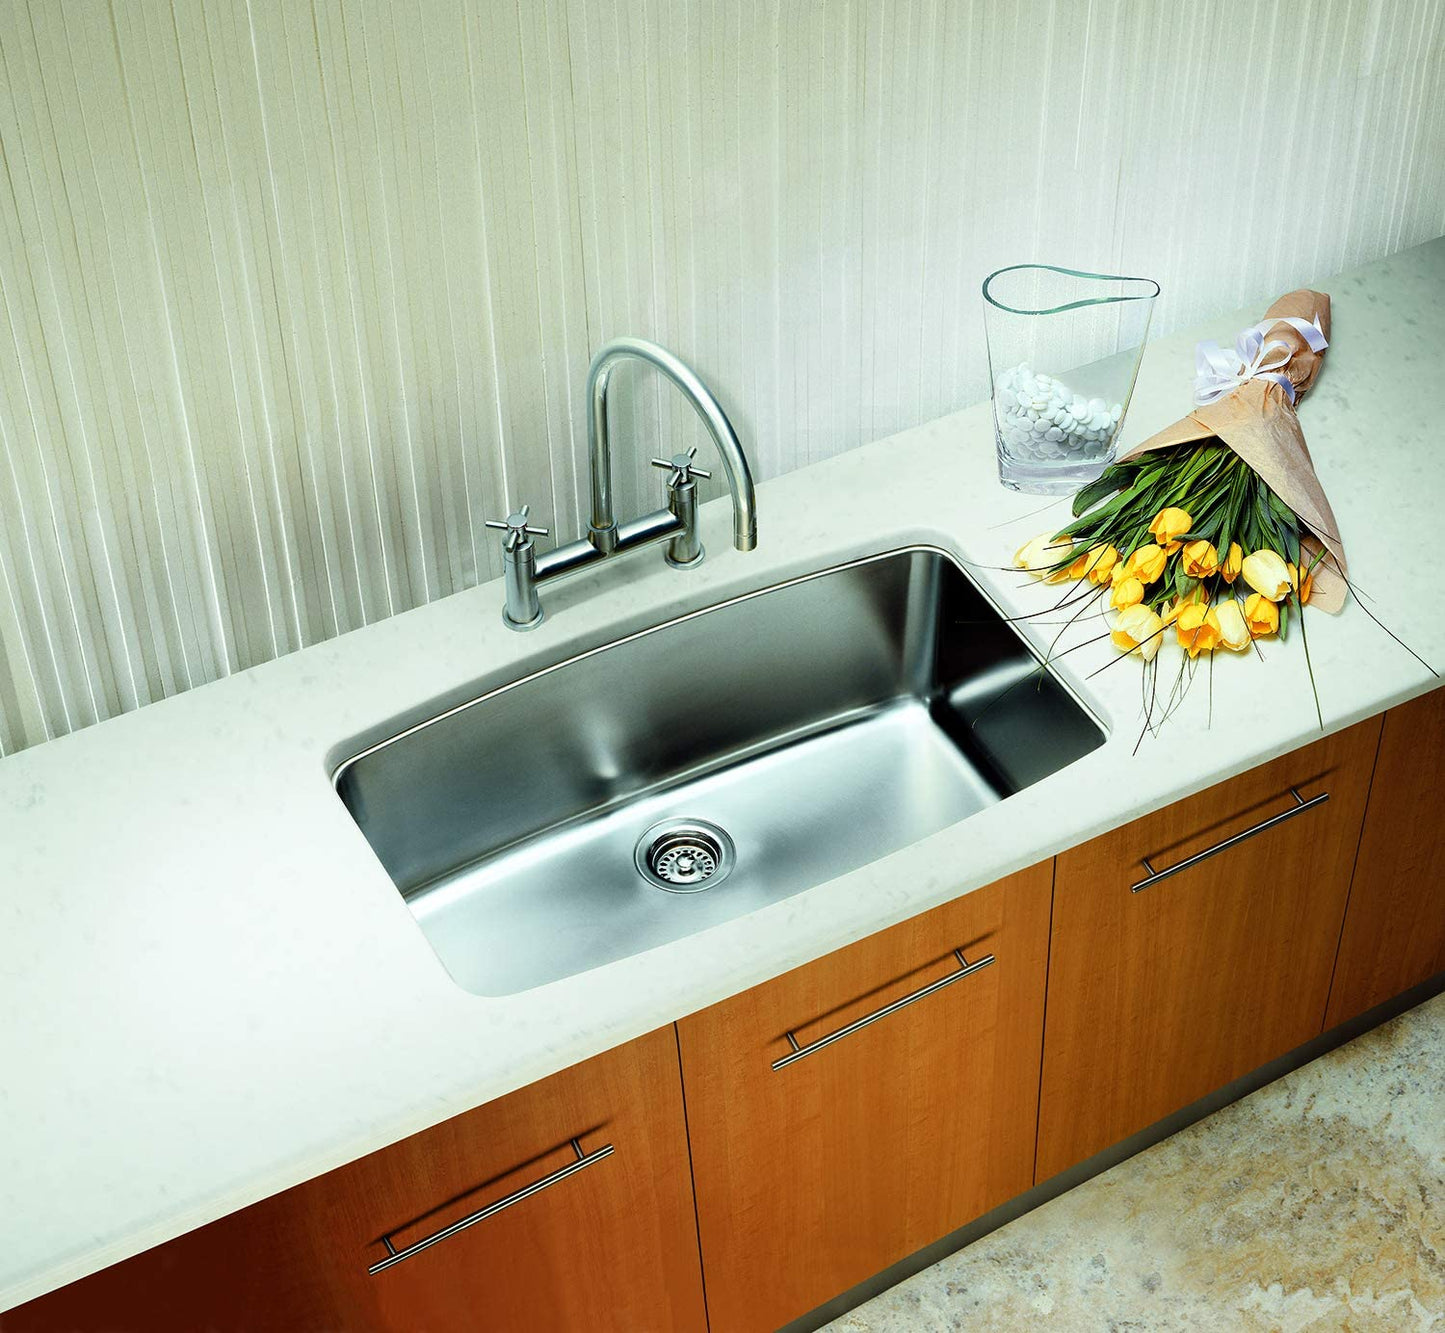 32" Performa Super Single Bowl Undermount Kitchen Sink